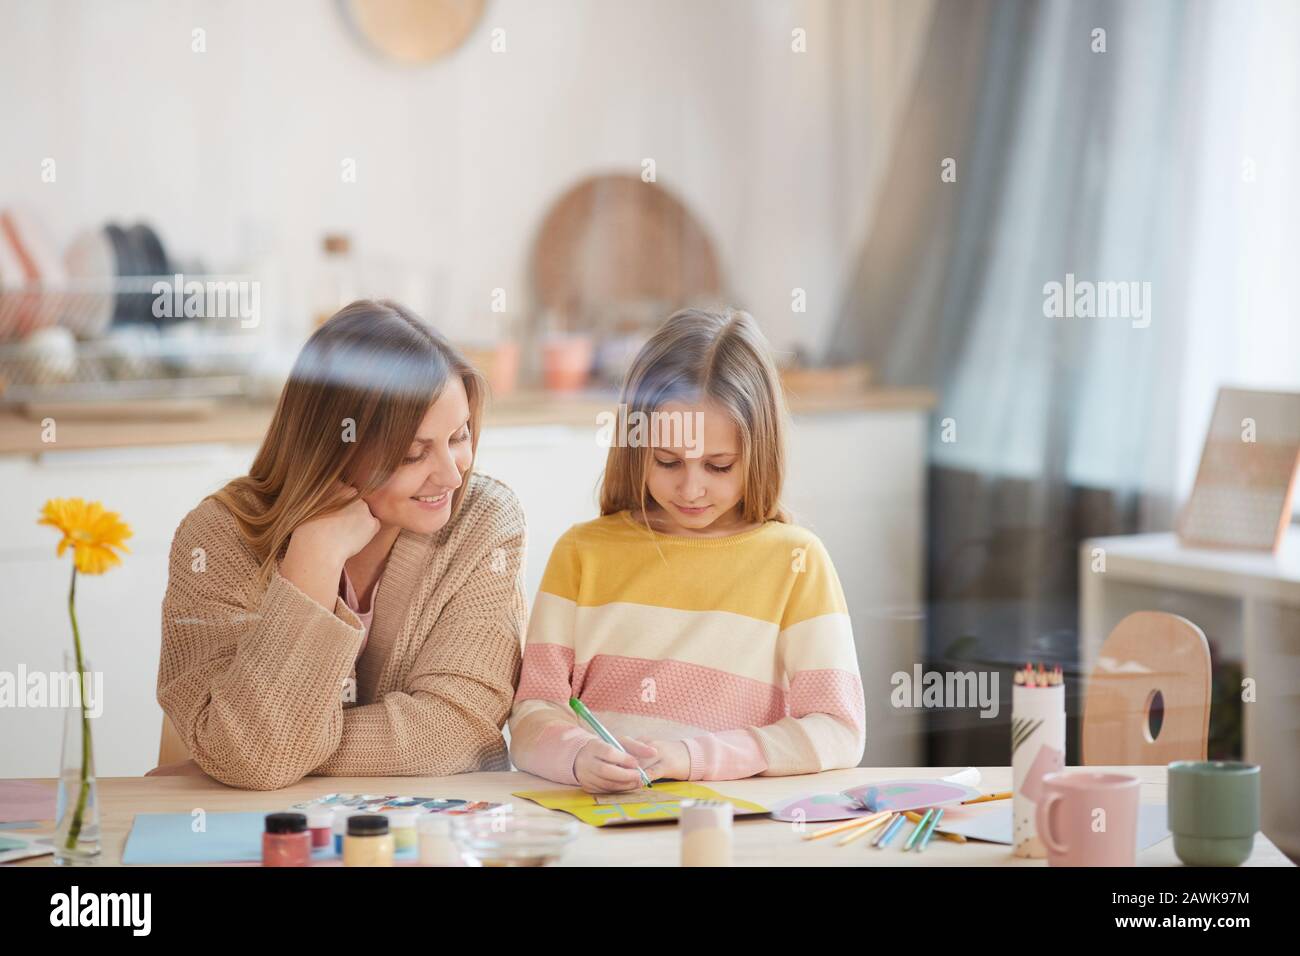 Portrait de mère mûre dans des tons chauds aidant une fille mignonne avec projet d'art et d'artisanat dans l'intérieur de la maison, espace de copie Banque D'Images